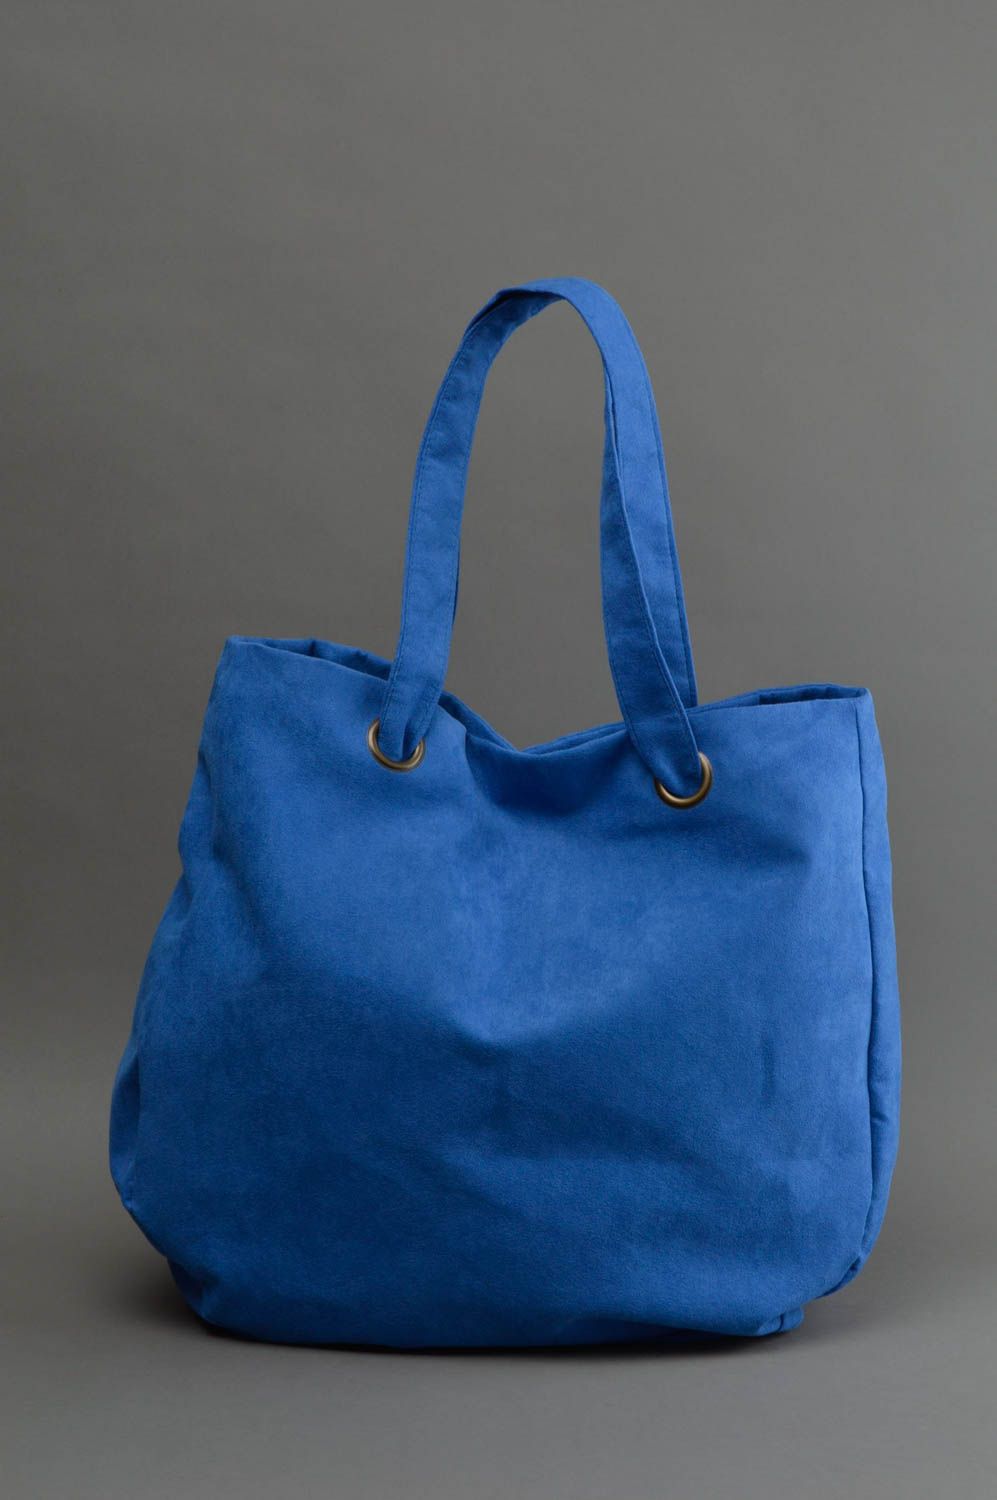 Grand sac à main bleu en daim artificiel fait main deux poignées design photo 1